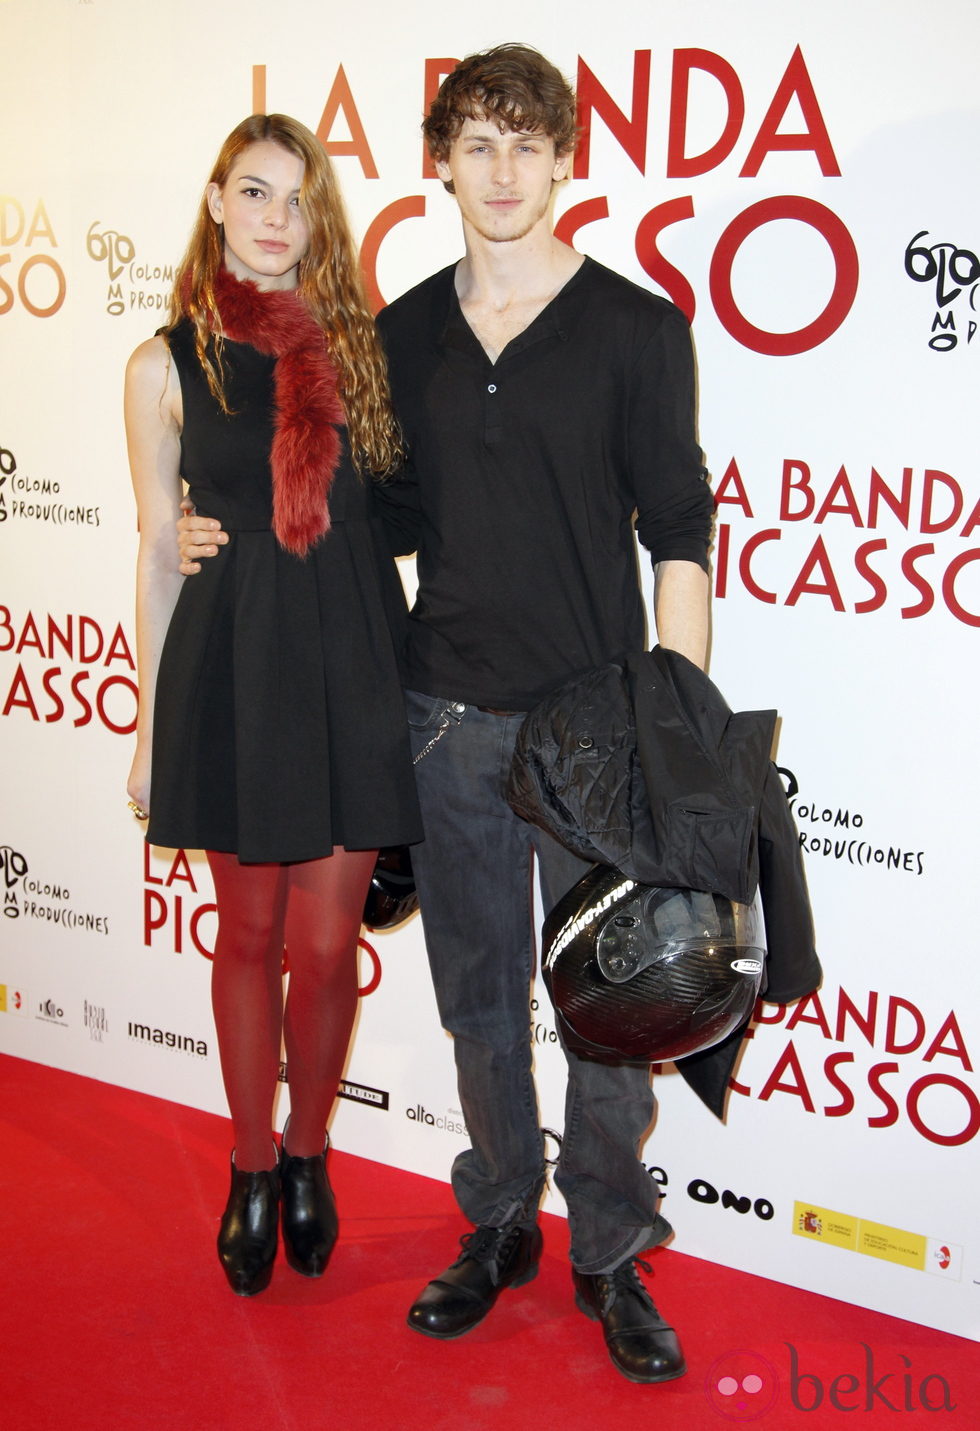 Nicolás Coronado y Cristina Duato en el estreno de 'La banda Picasso' en Madrid